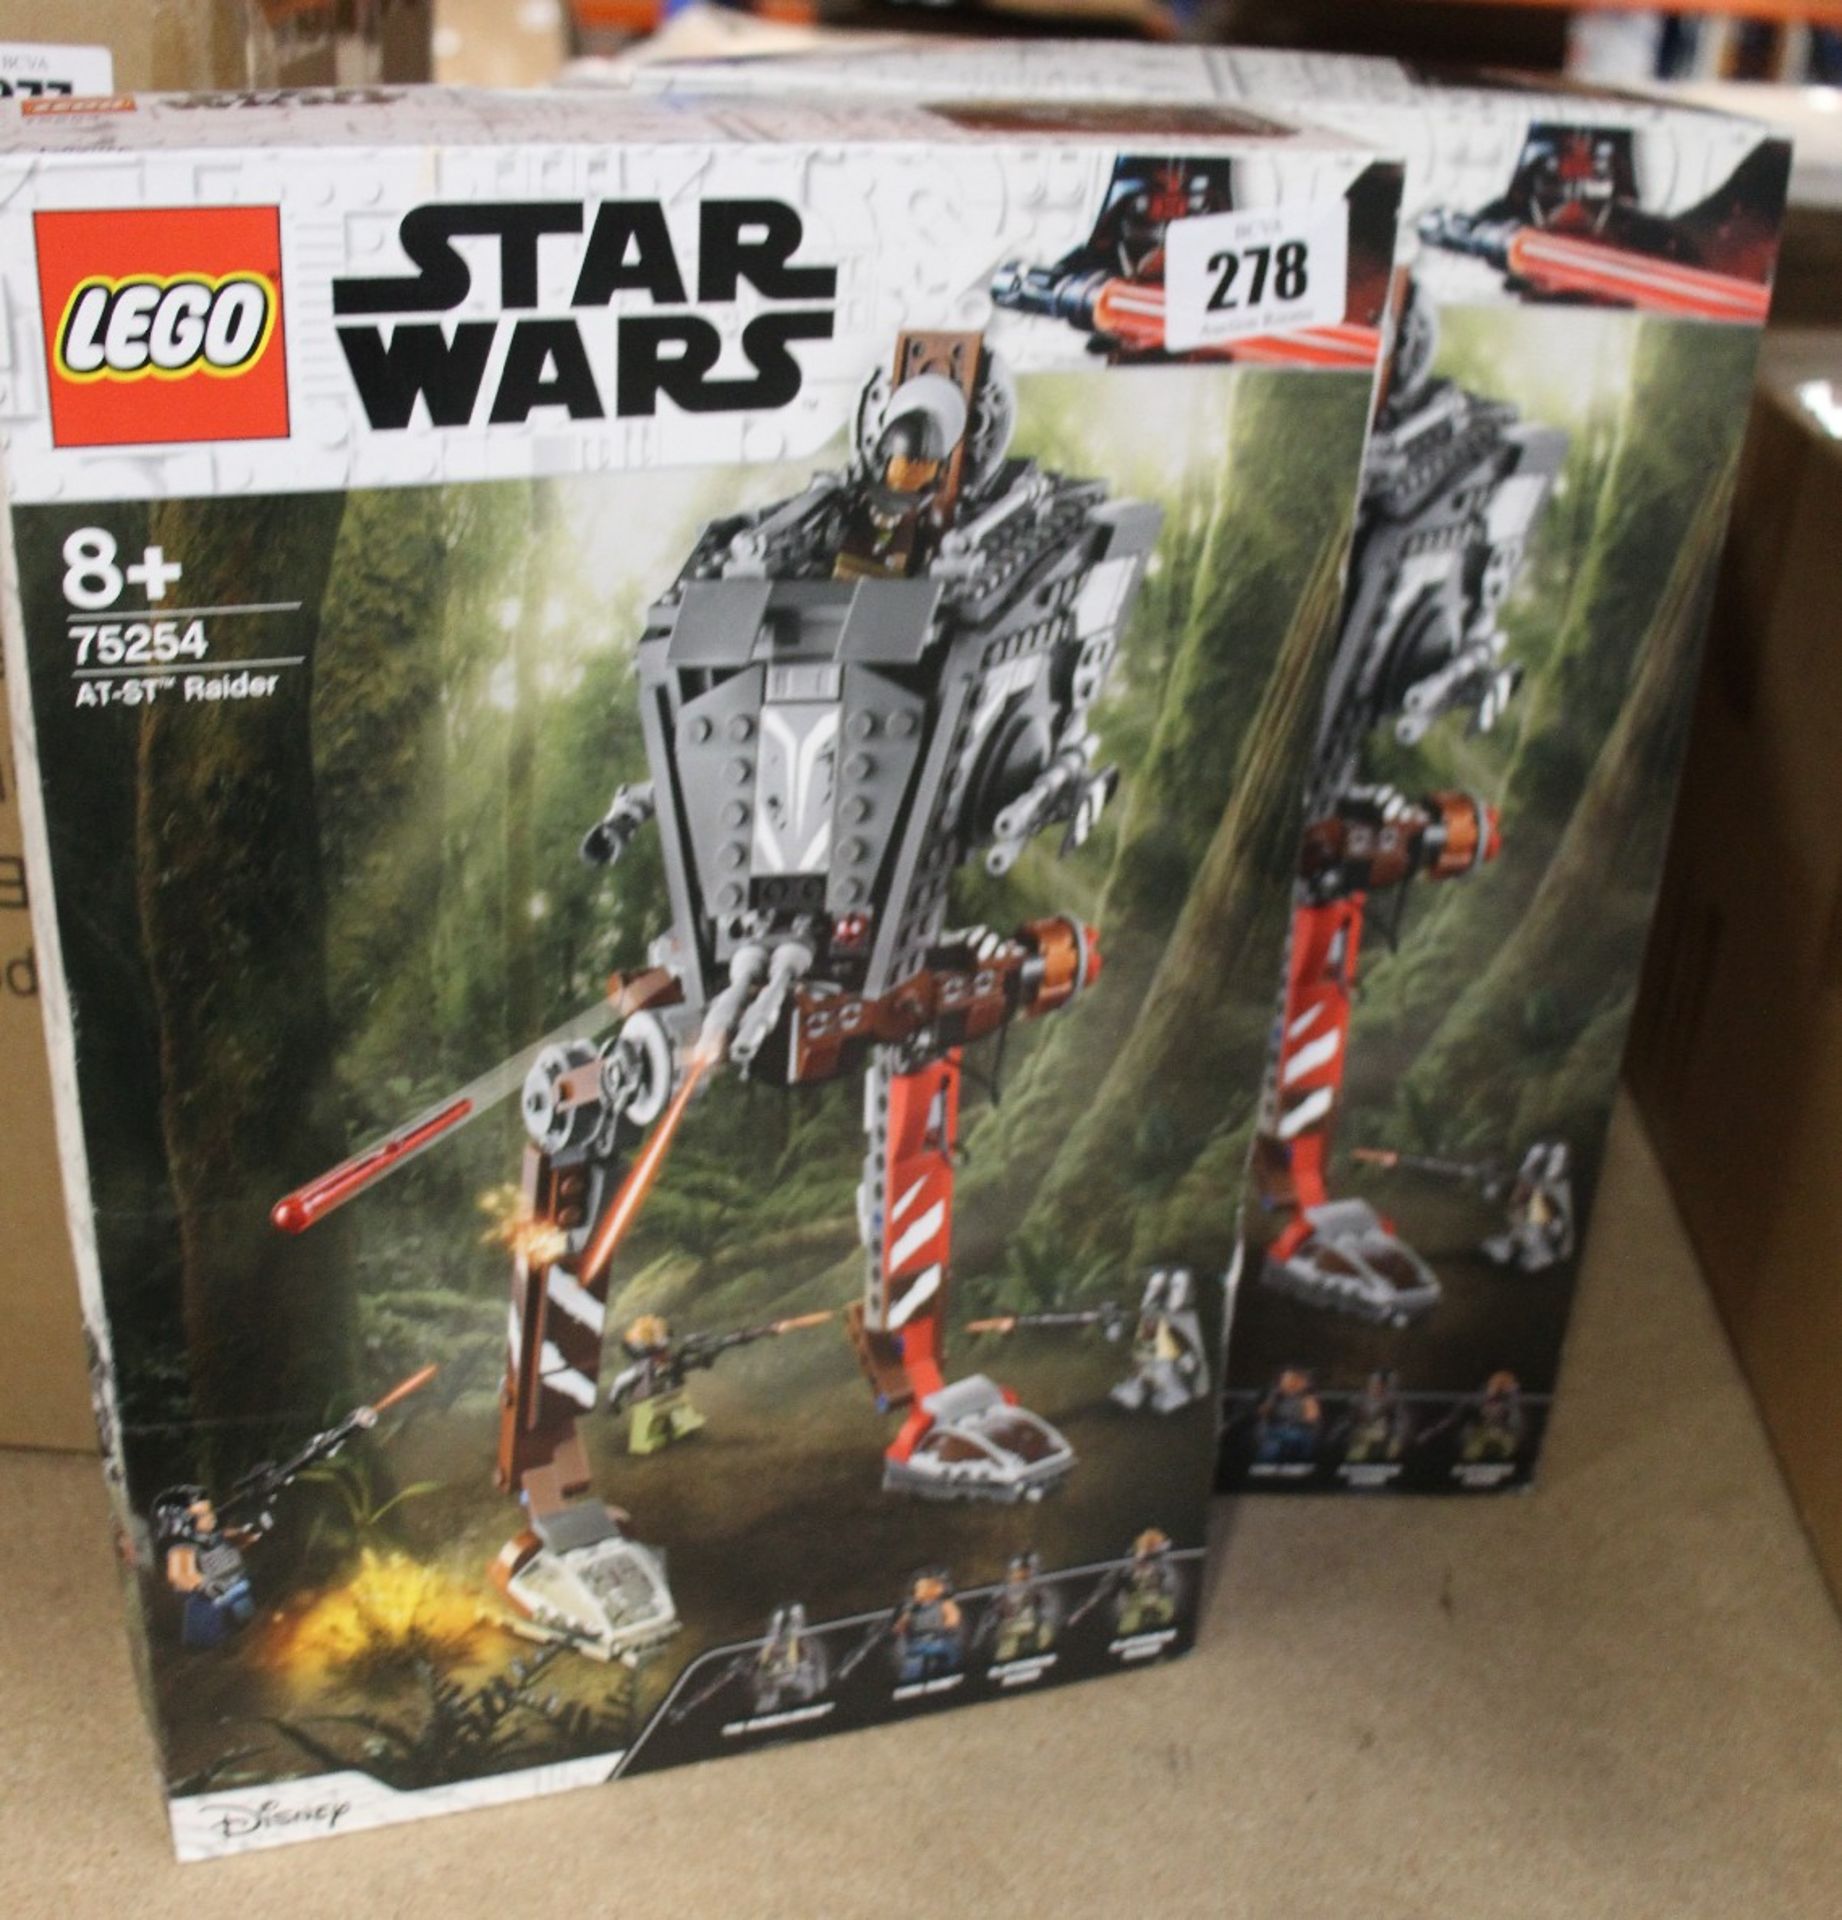 Two boxed as new LEGO Star Wars Mandalorian AT-ST Raider Sets (75254).